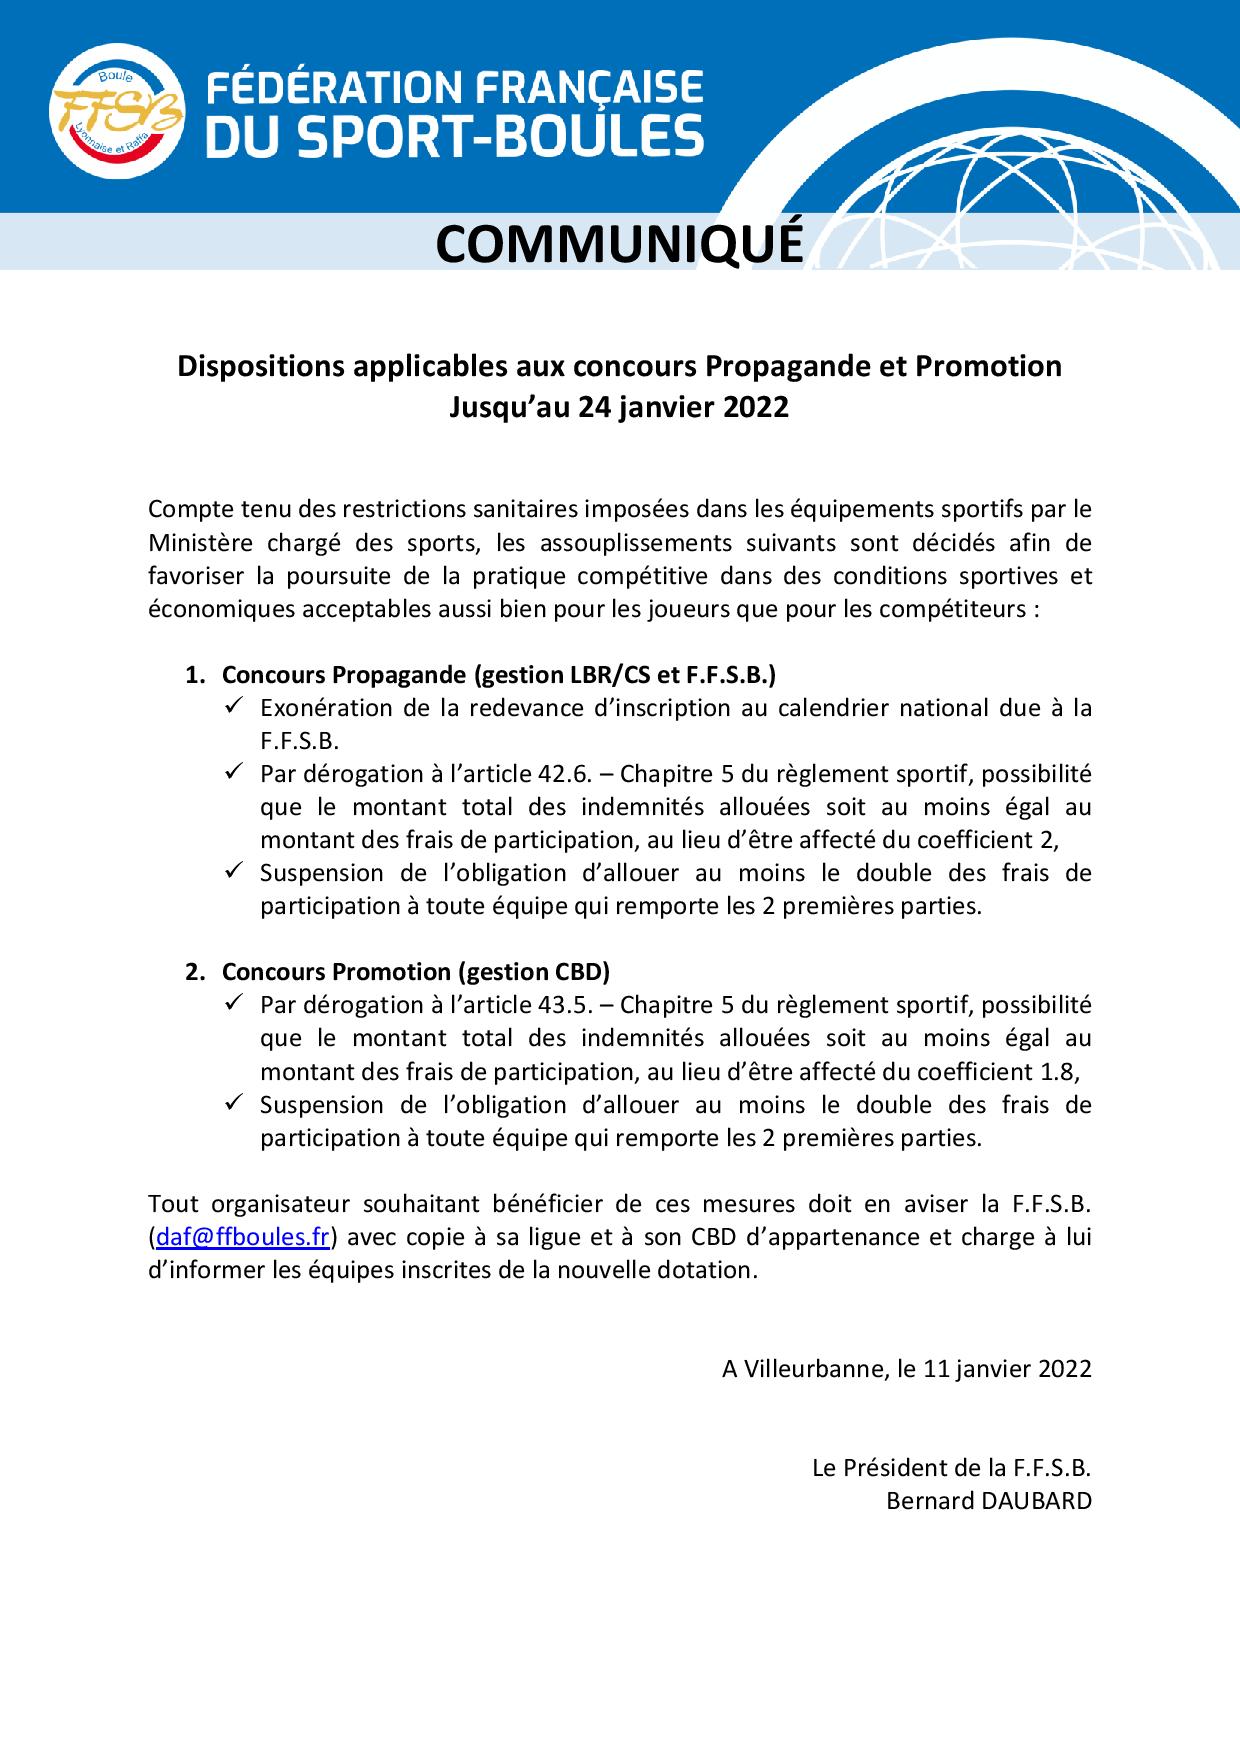 FFSB Communiqué Réglementation concours-page-001.jpg